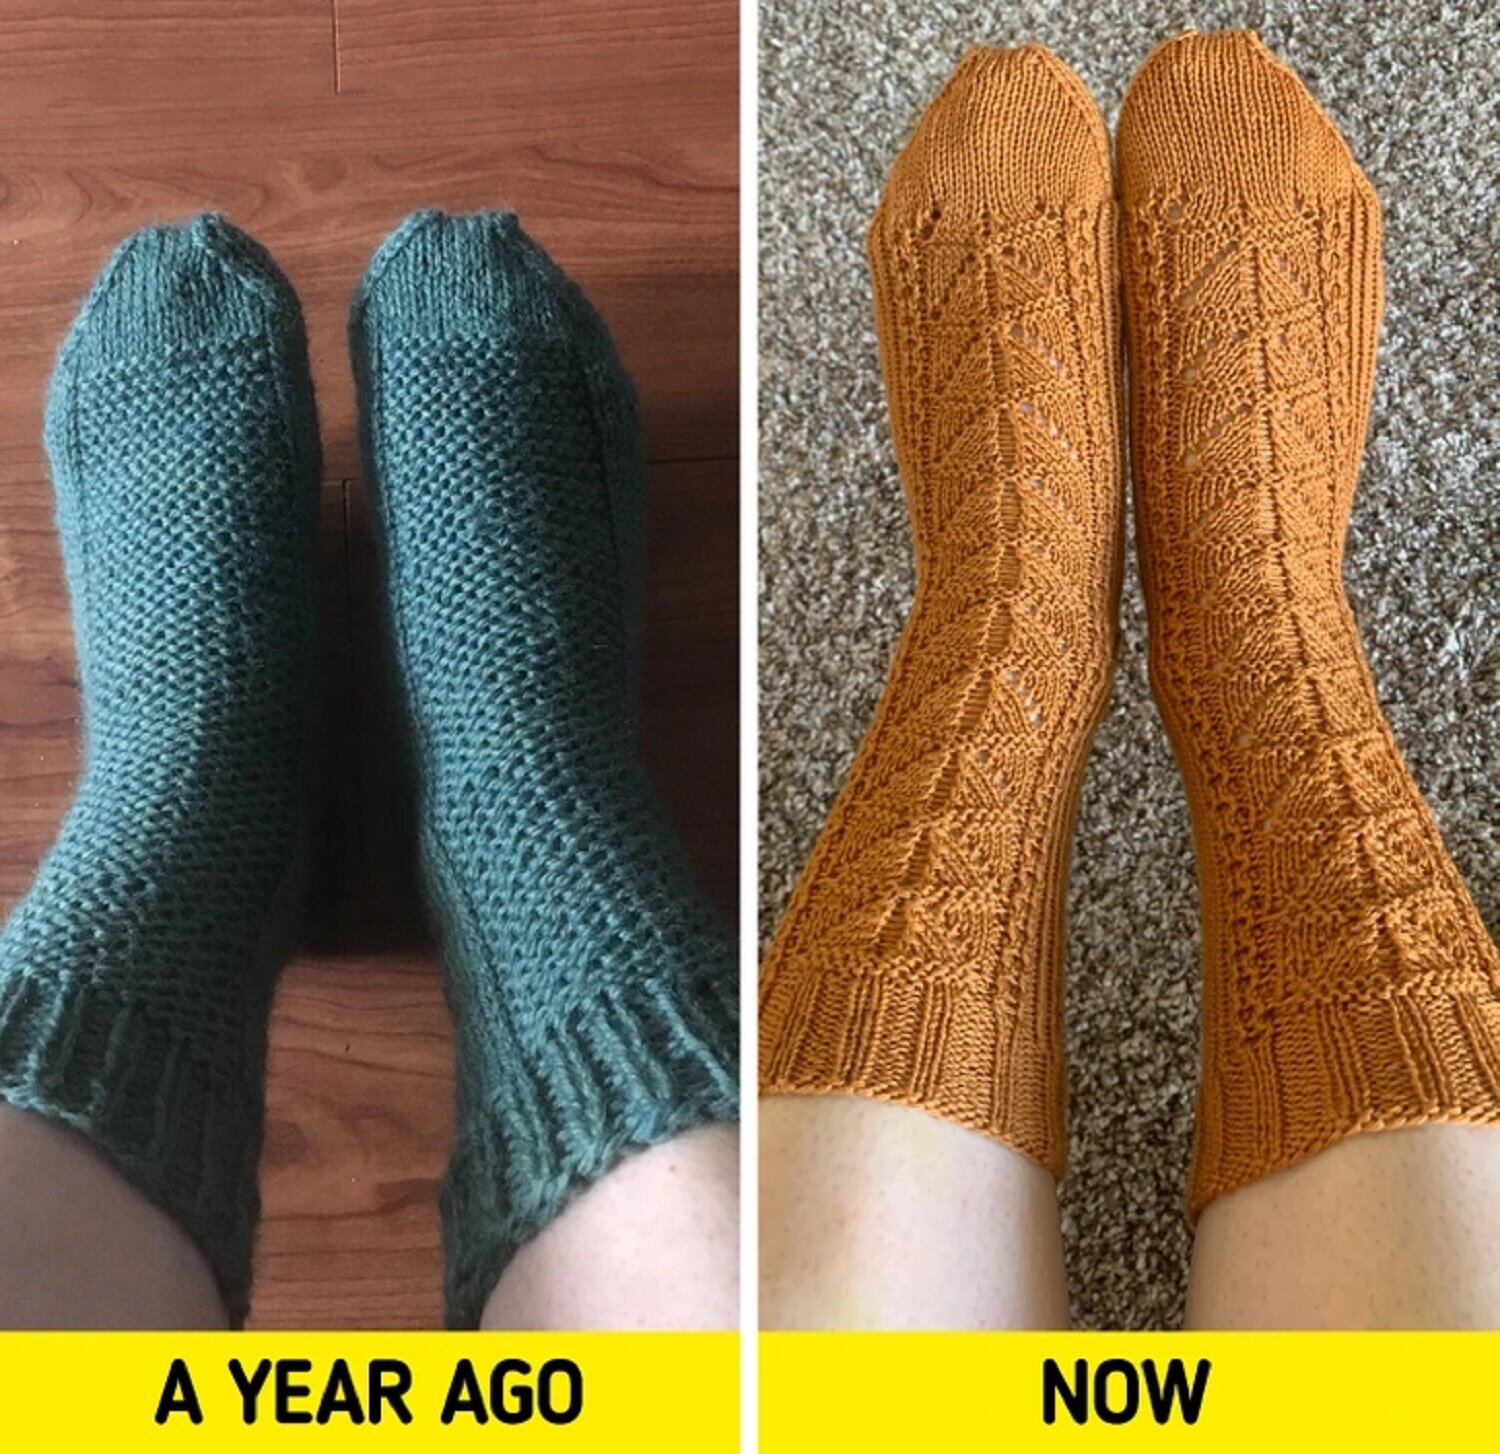 Đây là 2 đôi tất được đan cách nhau 1 năm. (Ảnh: Amandab220/Reddit)